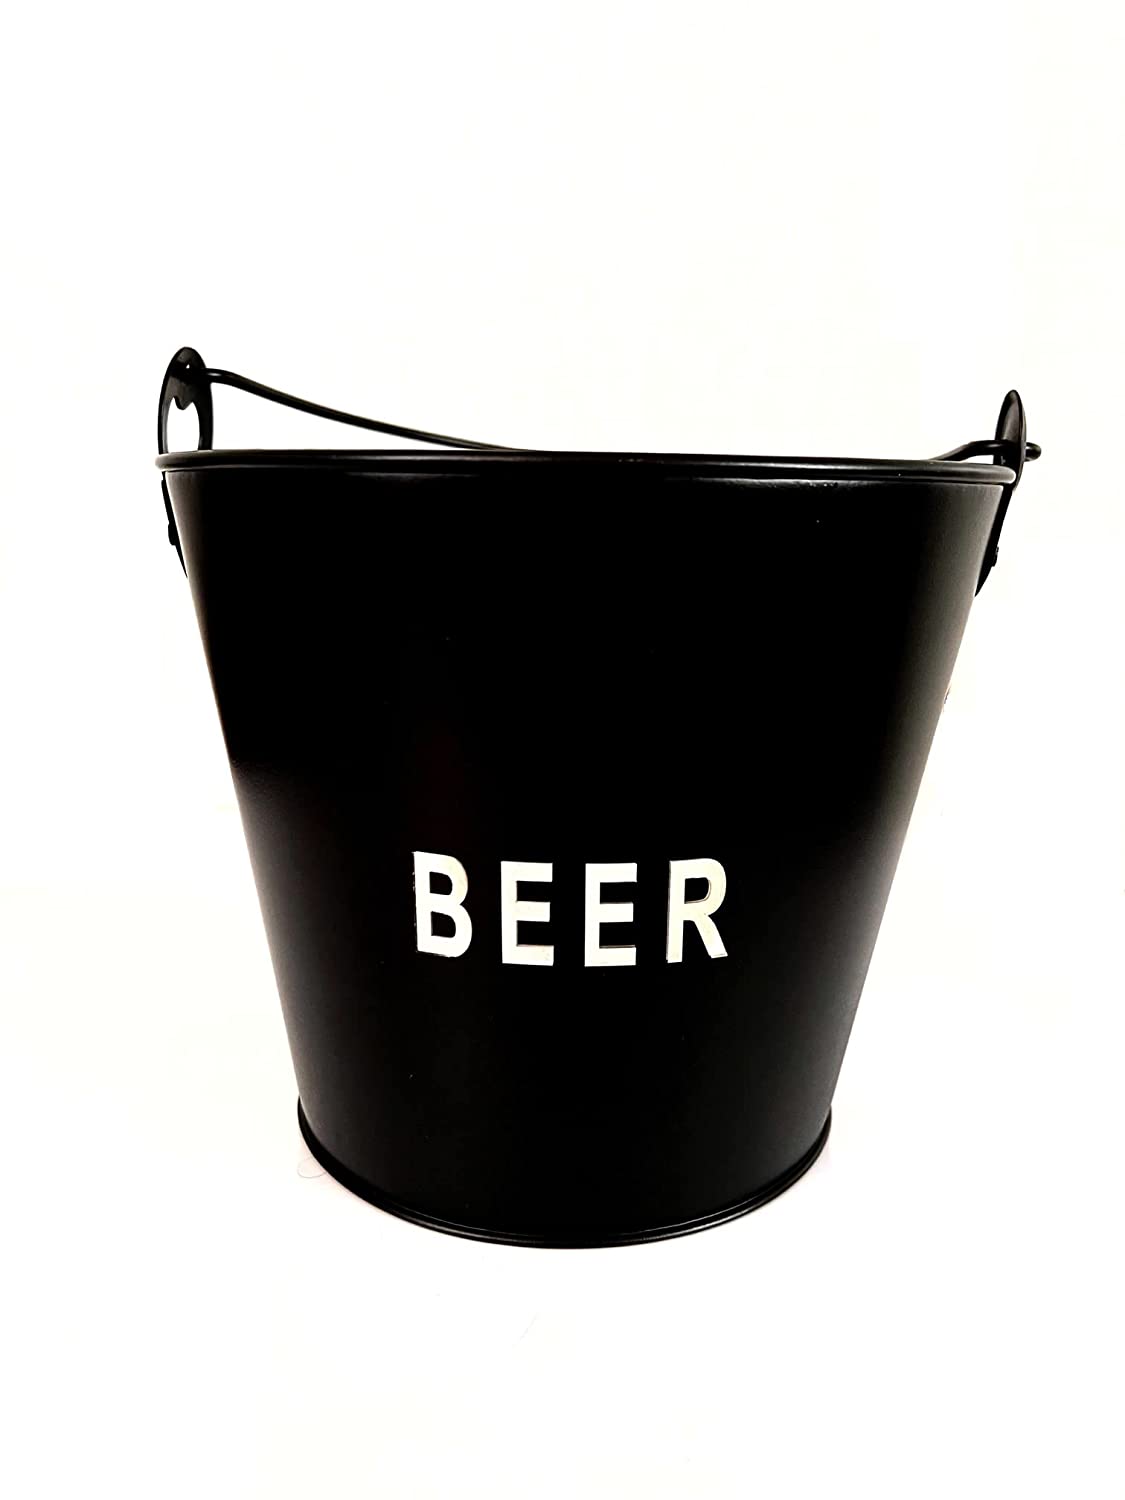 NJ Black Beer Bucket, Beer Tub Bucket Built-in Bottle Opener, Party Bucket, Ice Bucket, Wine Bucket, Beer Bucket for Party, Beer Bucket Large, Beer Bucket for Home, Bar Bucket: 1 Pc.